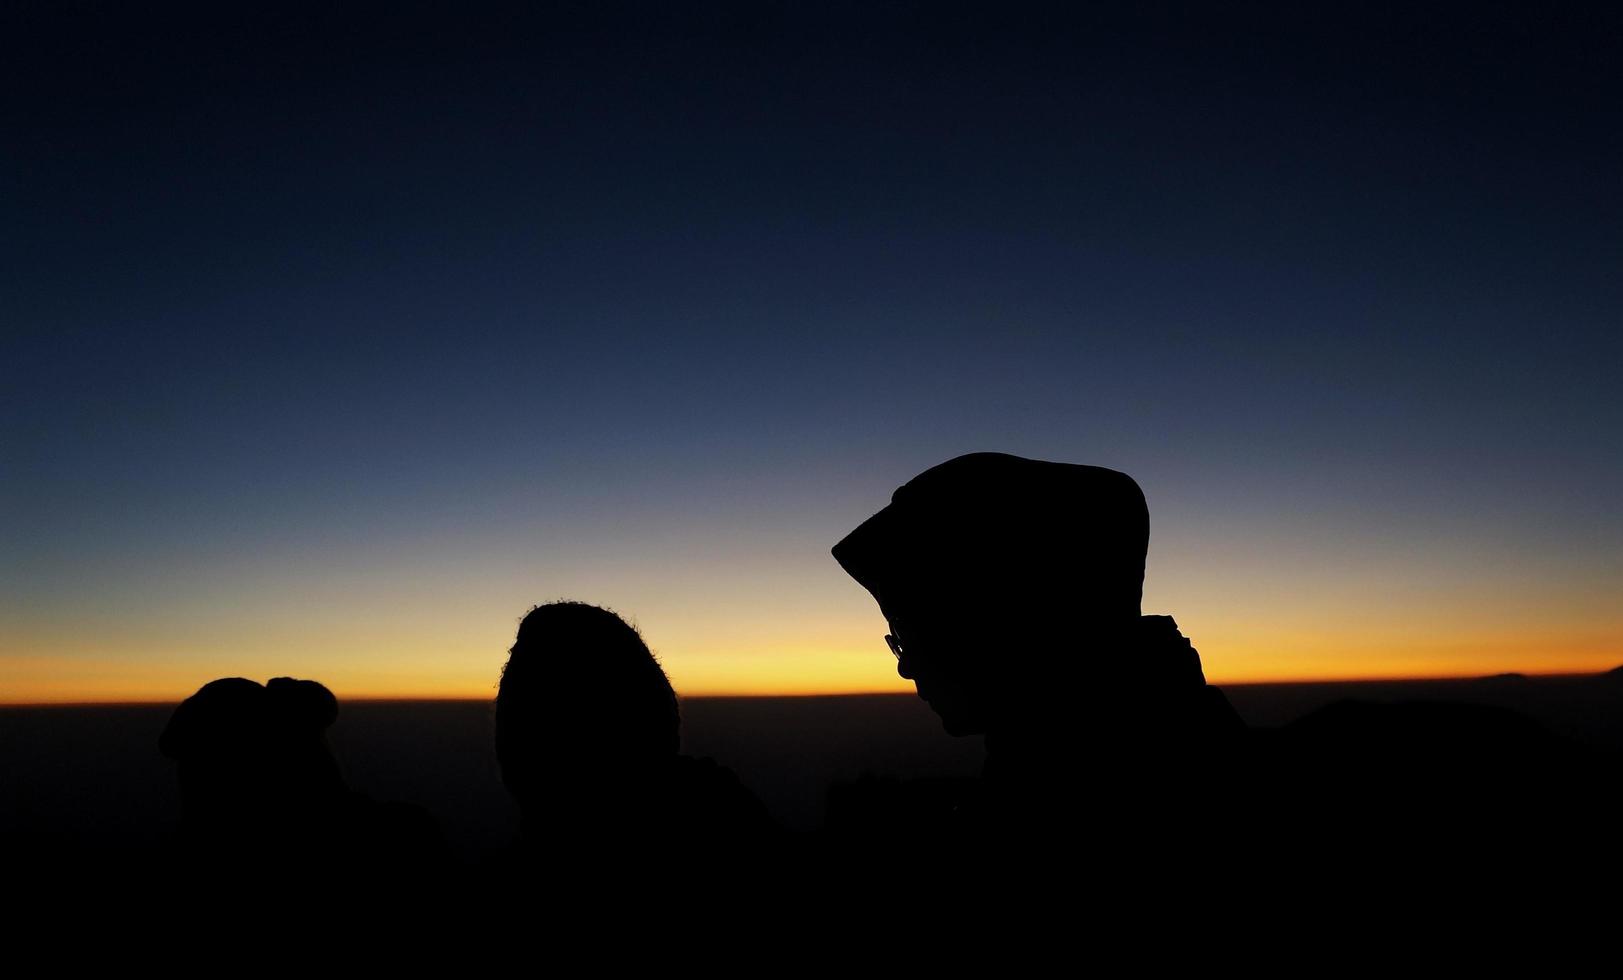 wonosobo, indonesia 31 agosto 2019. monte prau, la bellissima silhouette dell'alba e la vista della montagna, la gente al mattino foto